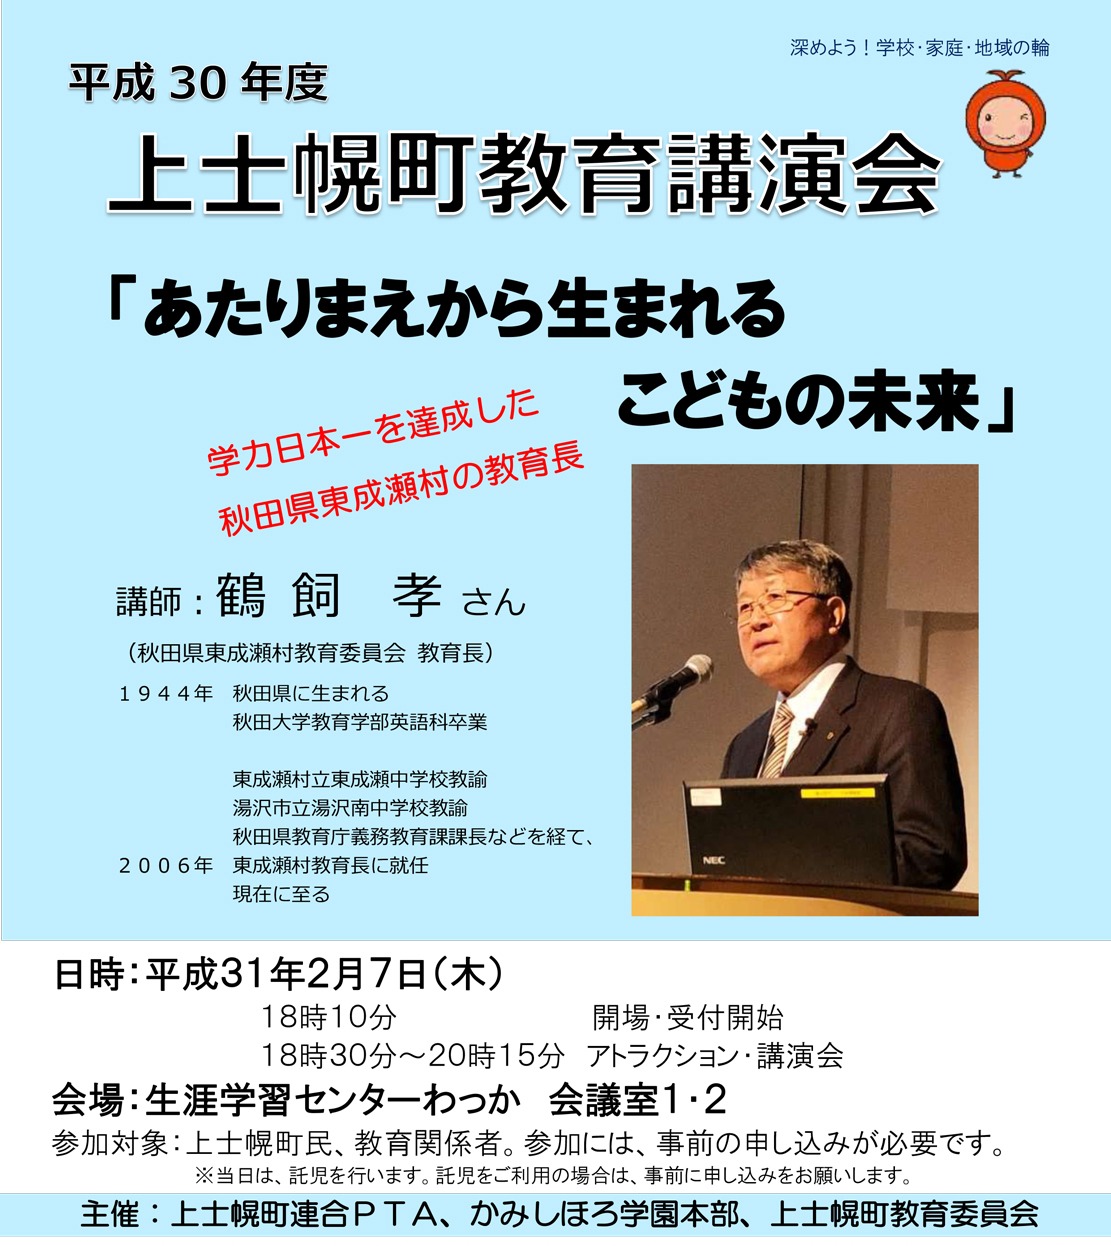 「学力日本一の村」秋田県東成瀬村から鶴飼教育長をお招きして講演会を開催いたします。是非ご来場くださいの画像